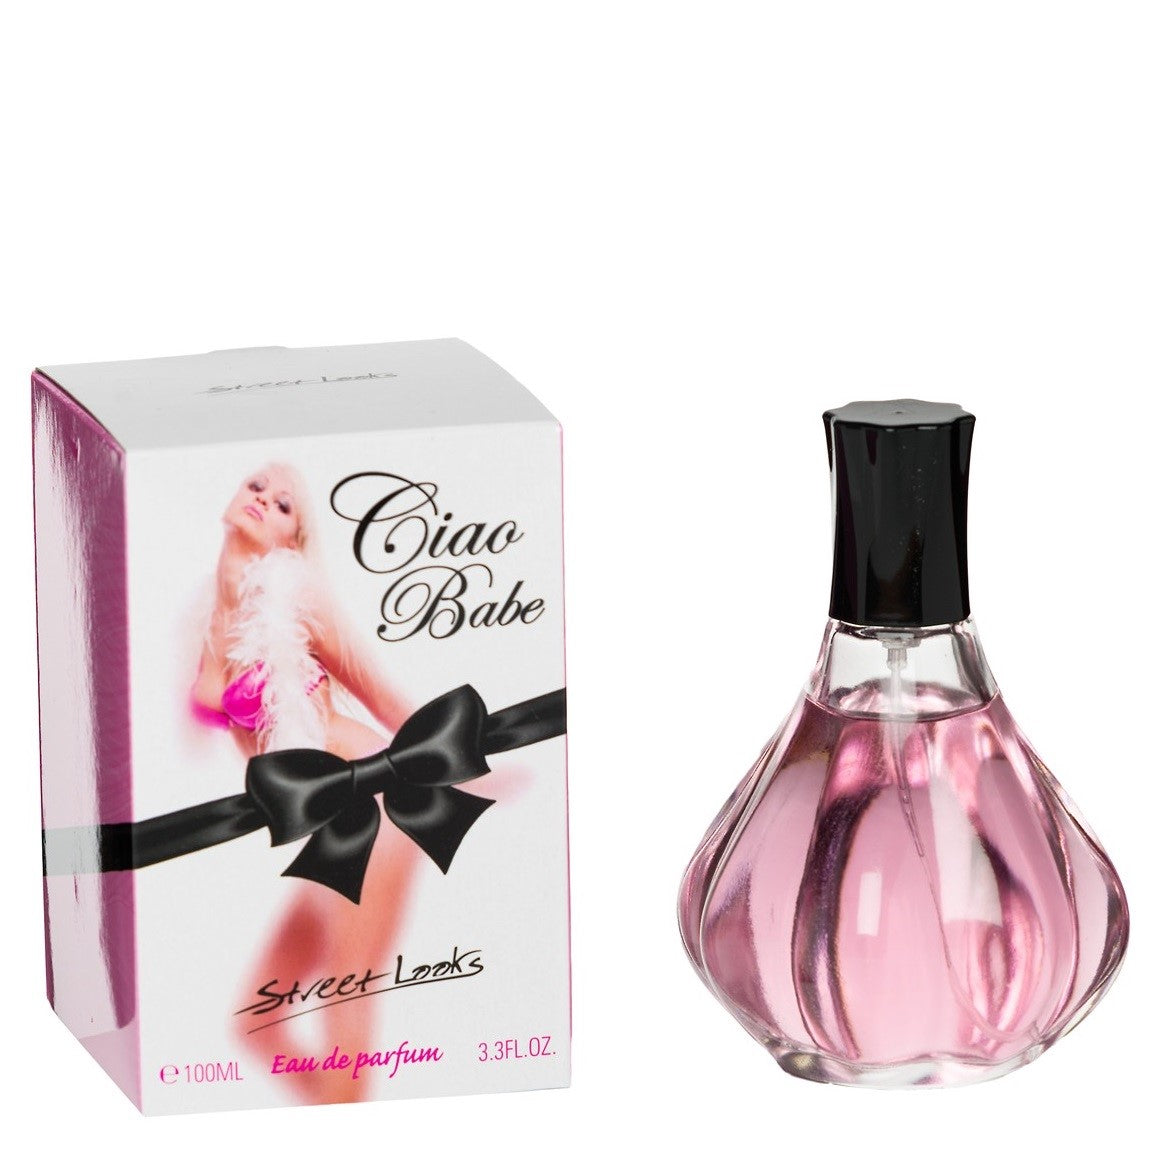 100 ml Parfum EDP "CIAO BABE" cu Arome Fructat-Florale pentru Femei